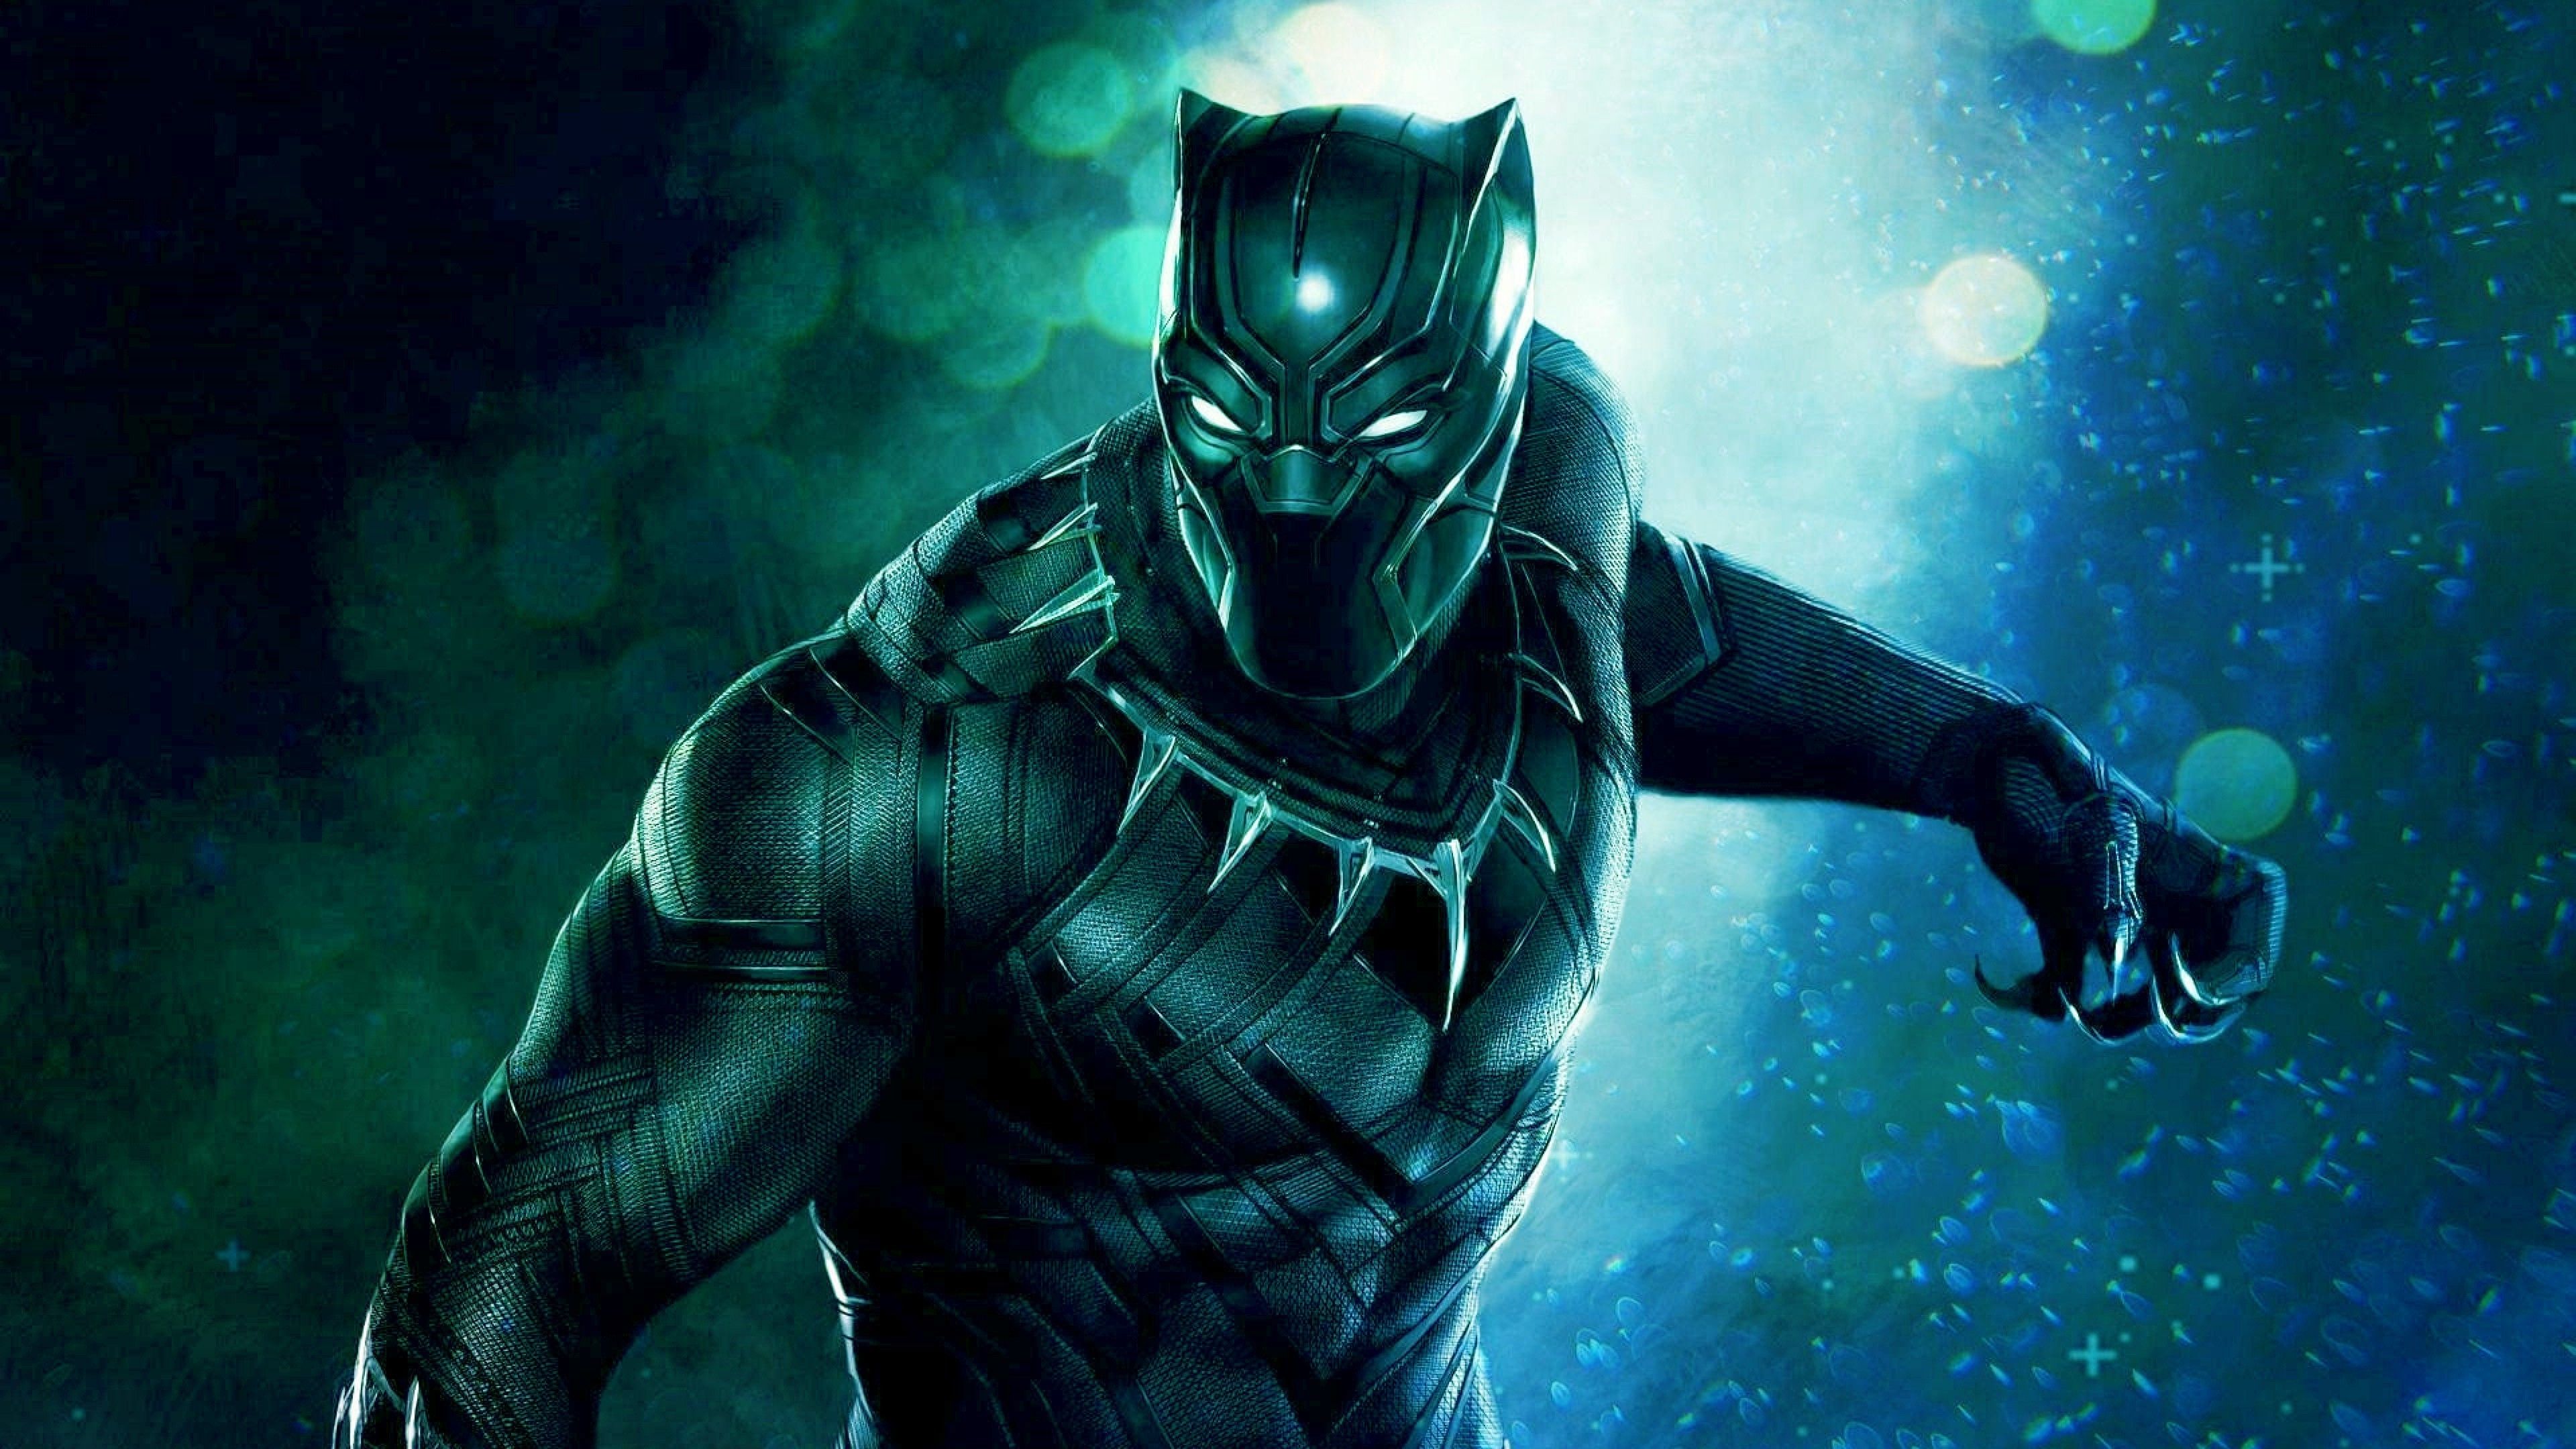 Free download 4K Image of Black Panther Superhero HD Wallpaper